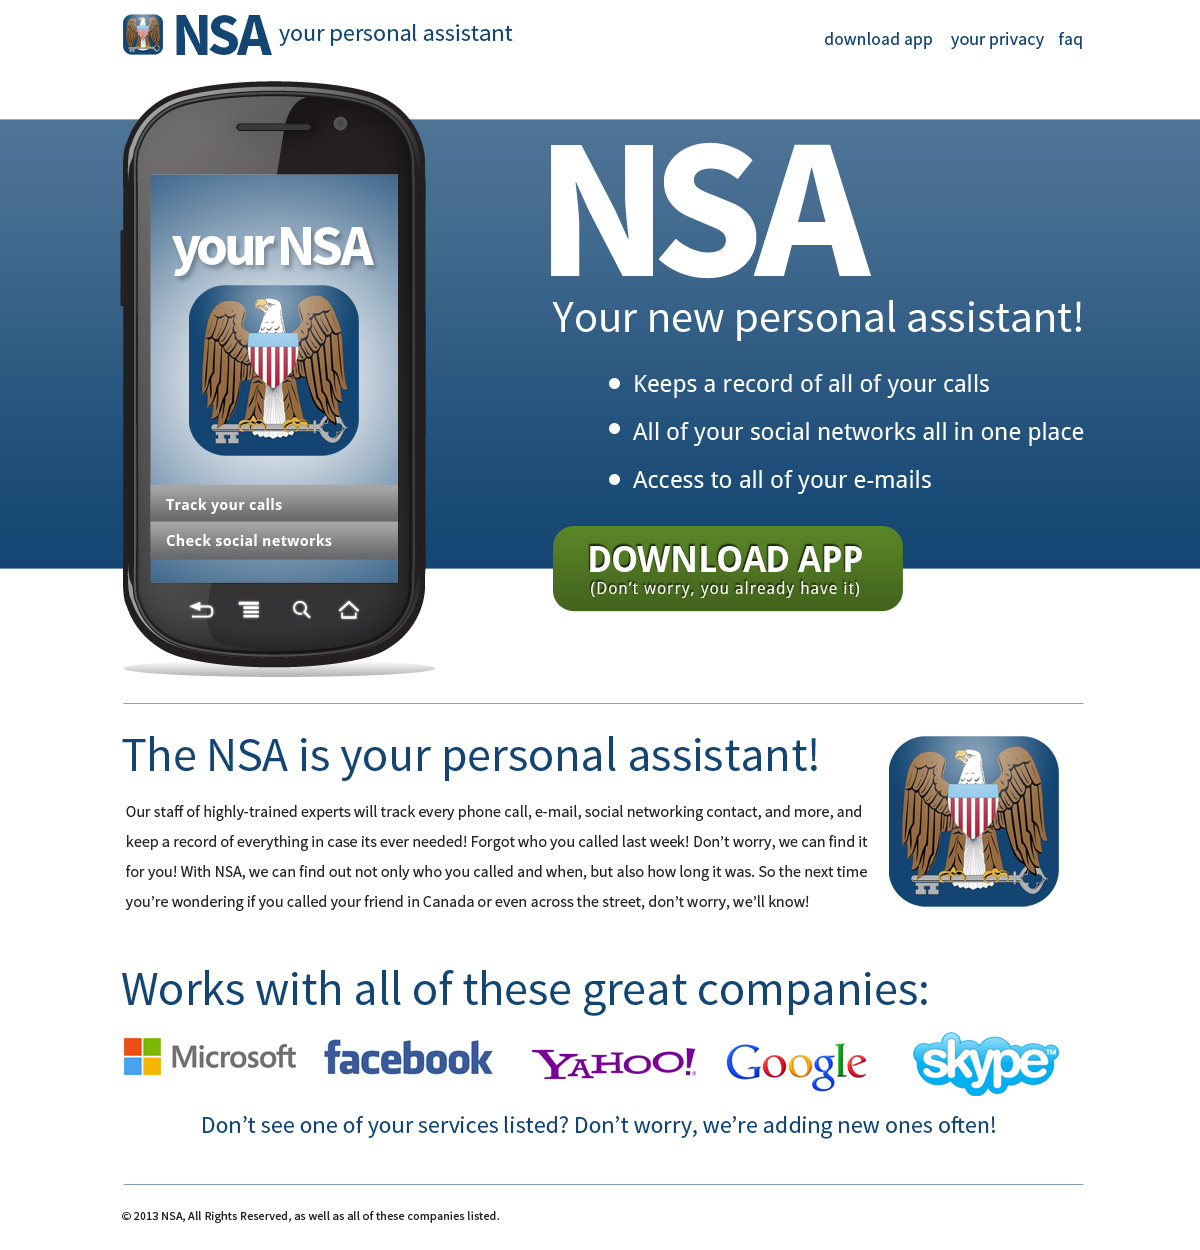 The NSA App